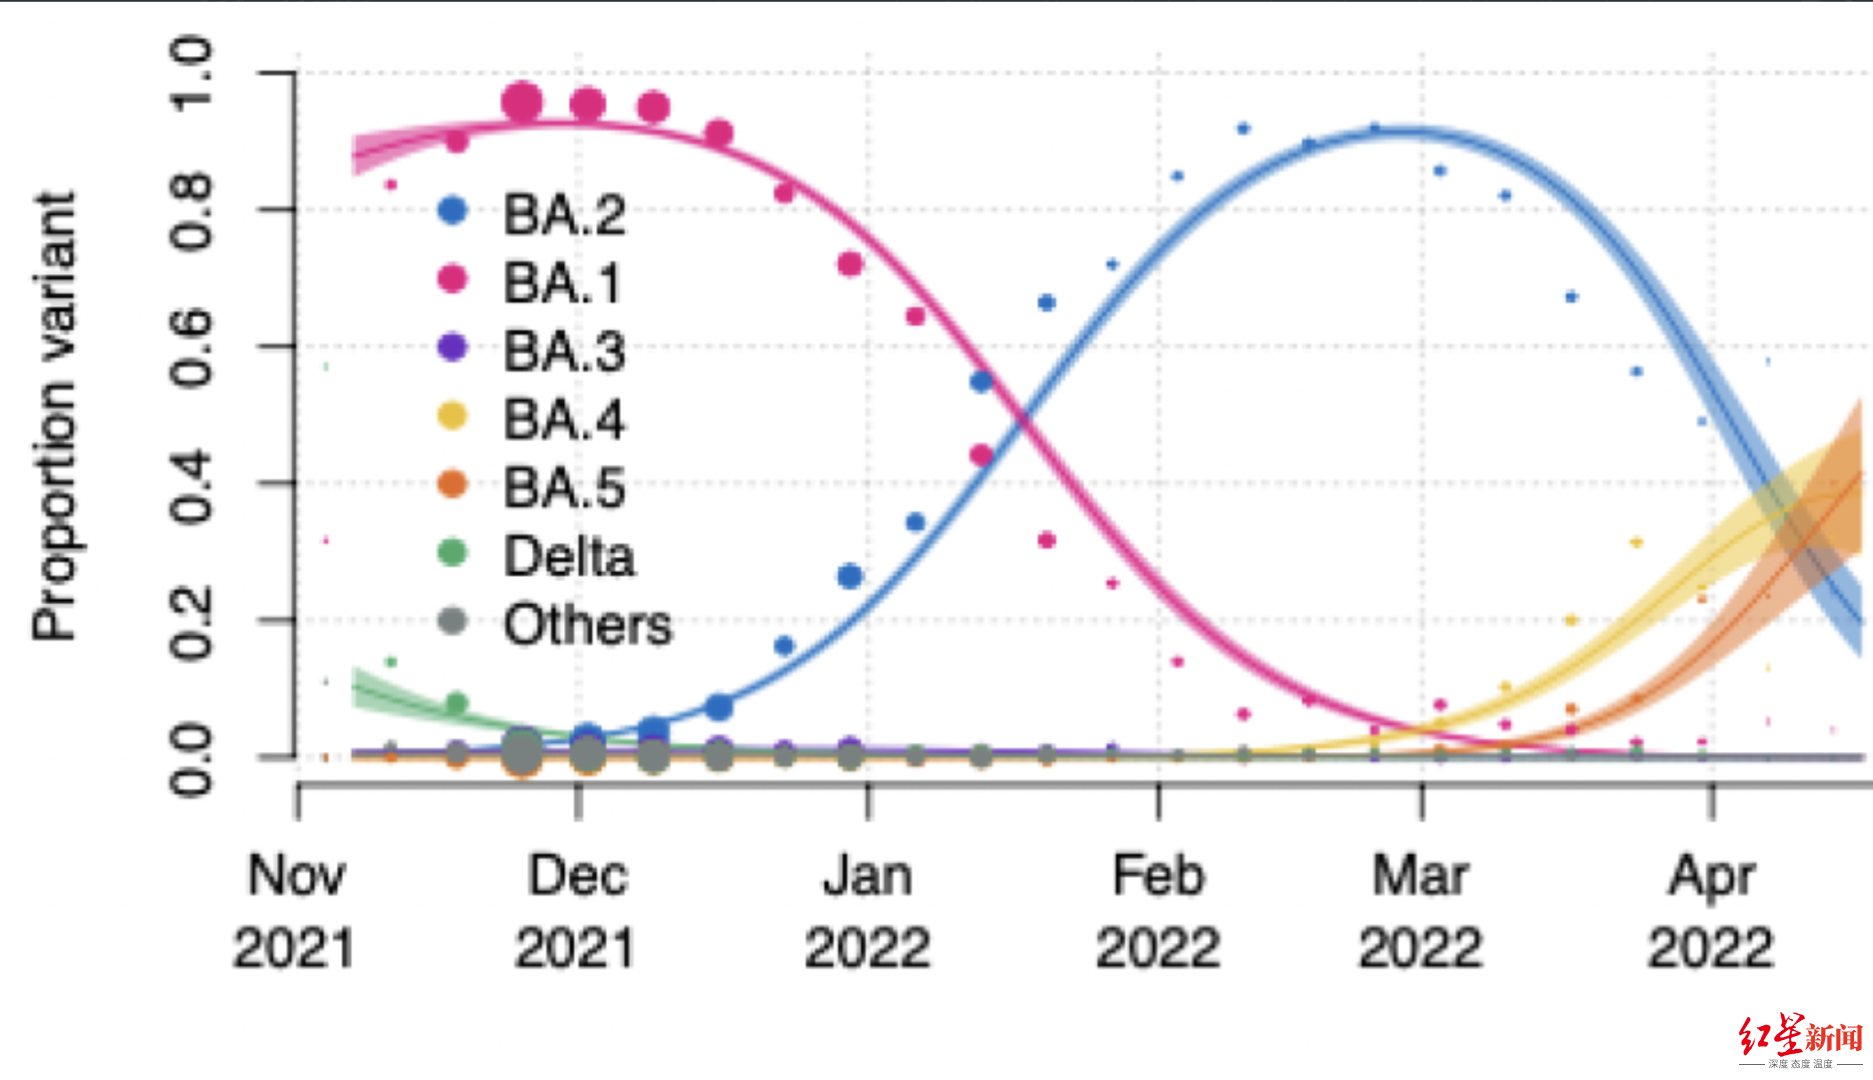 ▲南非专家图里奥称，与BA.2和BA.1相比，BA.4和BA.5传播性可能更高